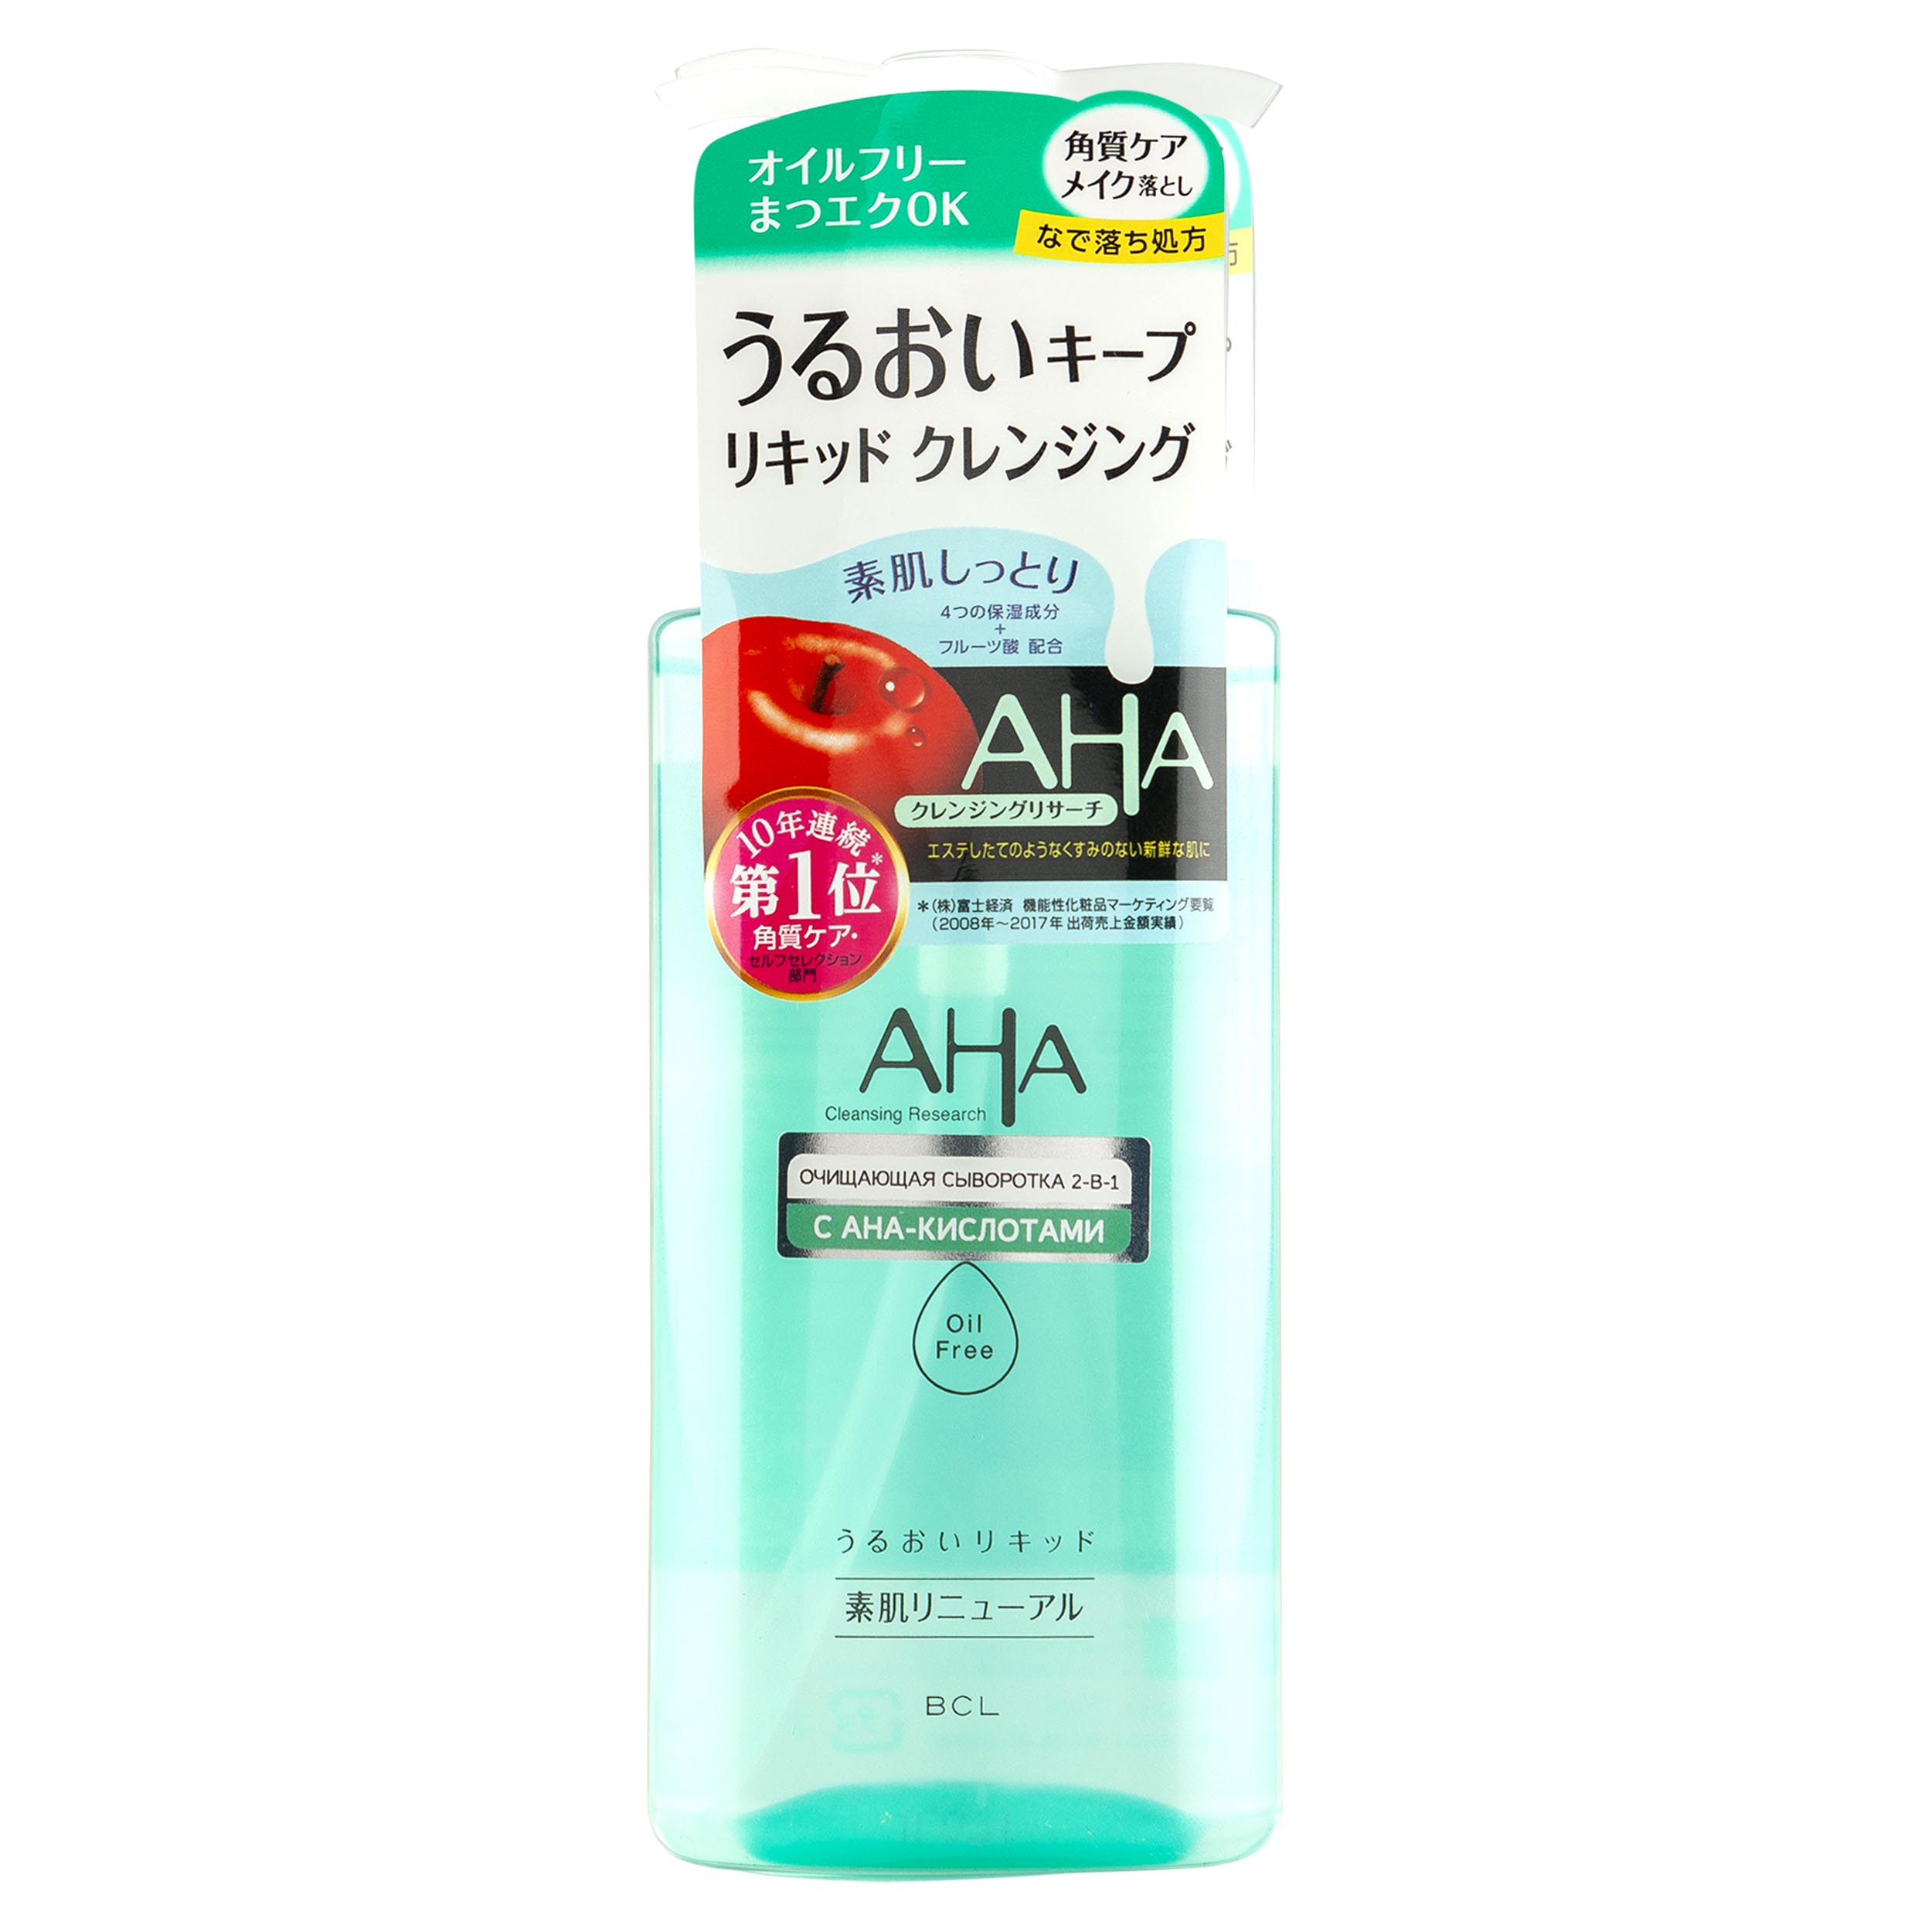 Aha Очищающая сыворотка для снятия макияжа 2-в-1 с фруктовыми кислотами для нормальной и комбинированной кожи, 200 мл (Aha, Basic)